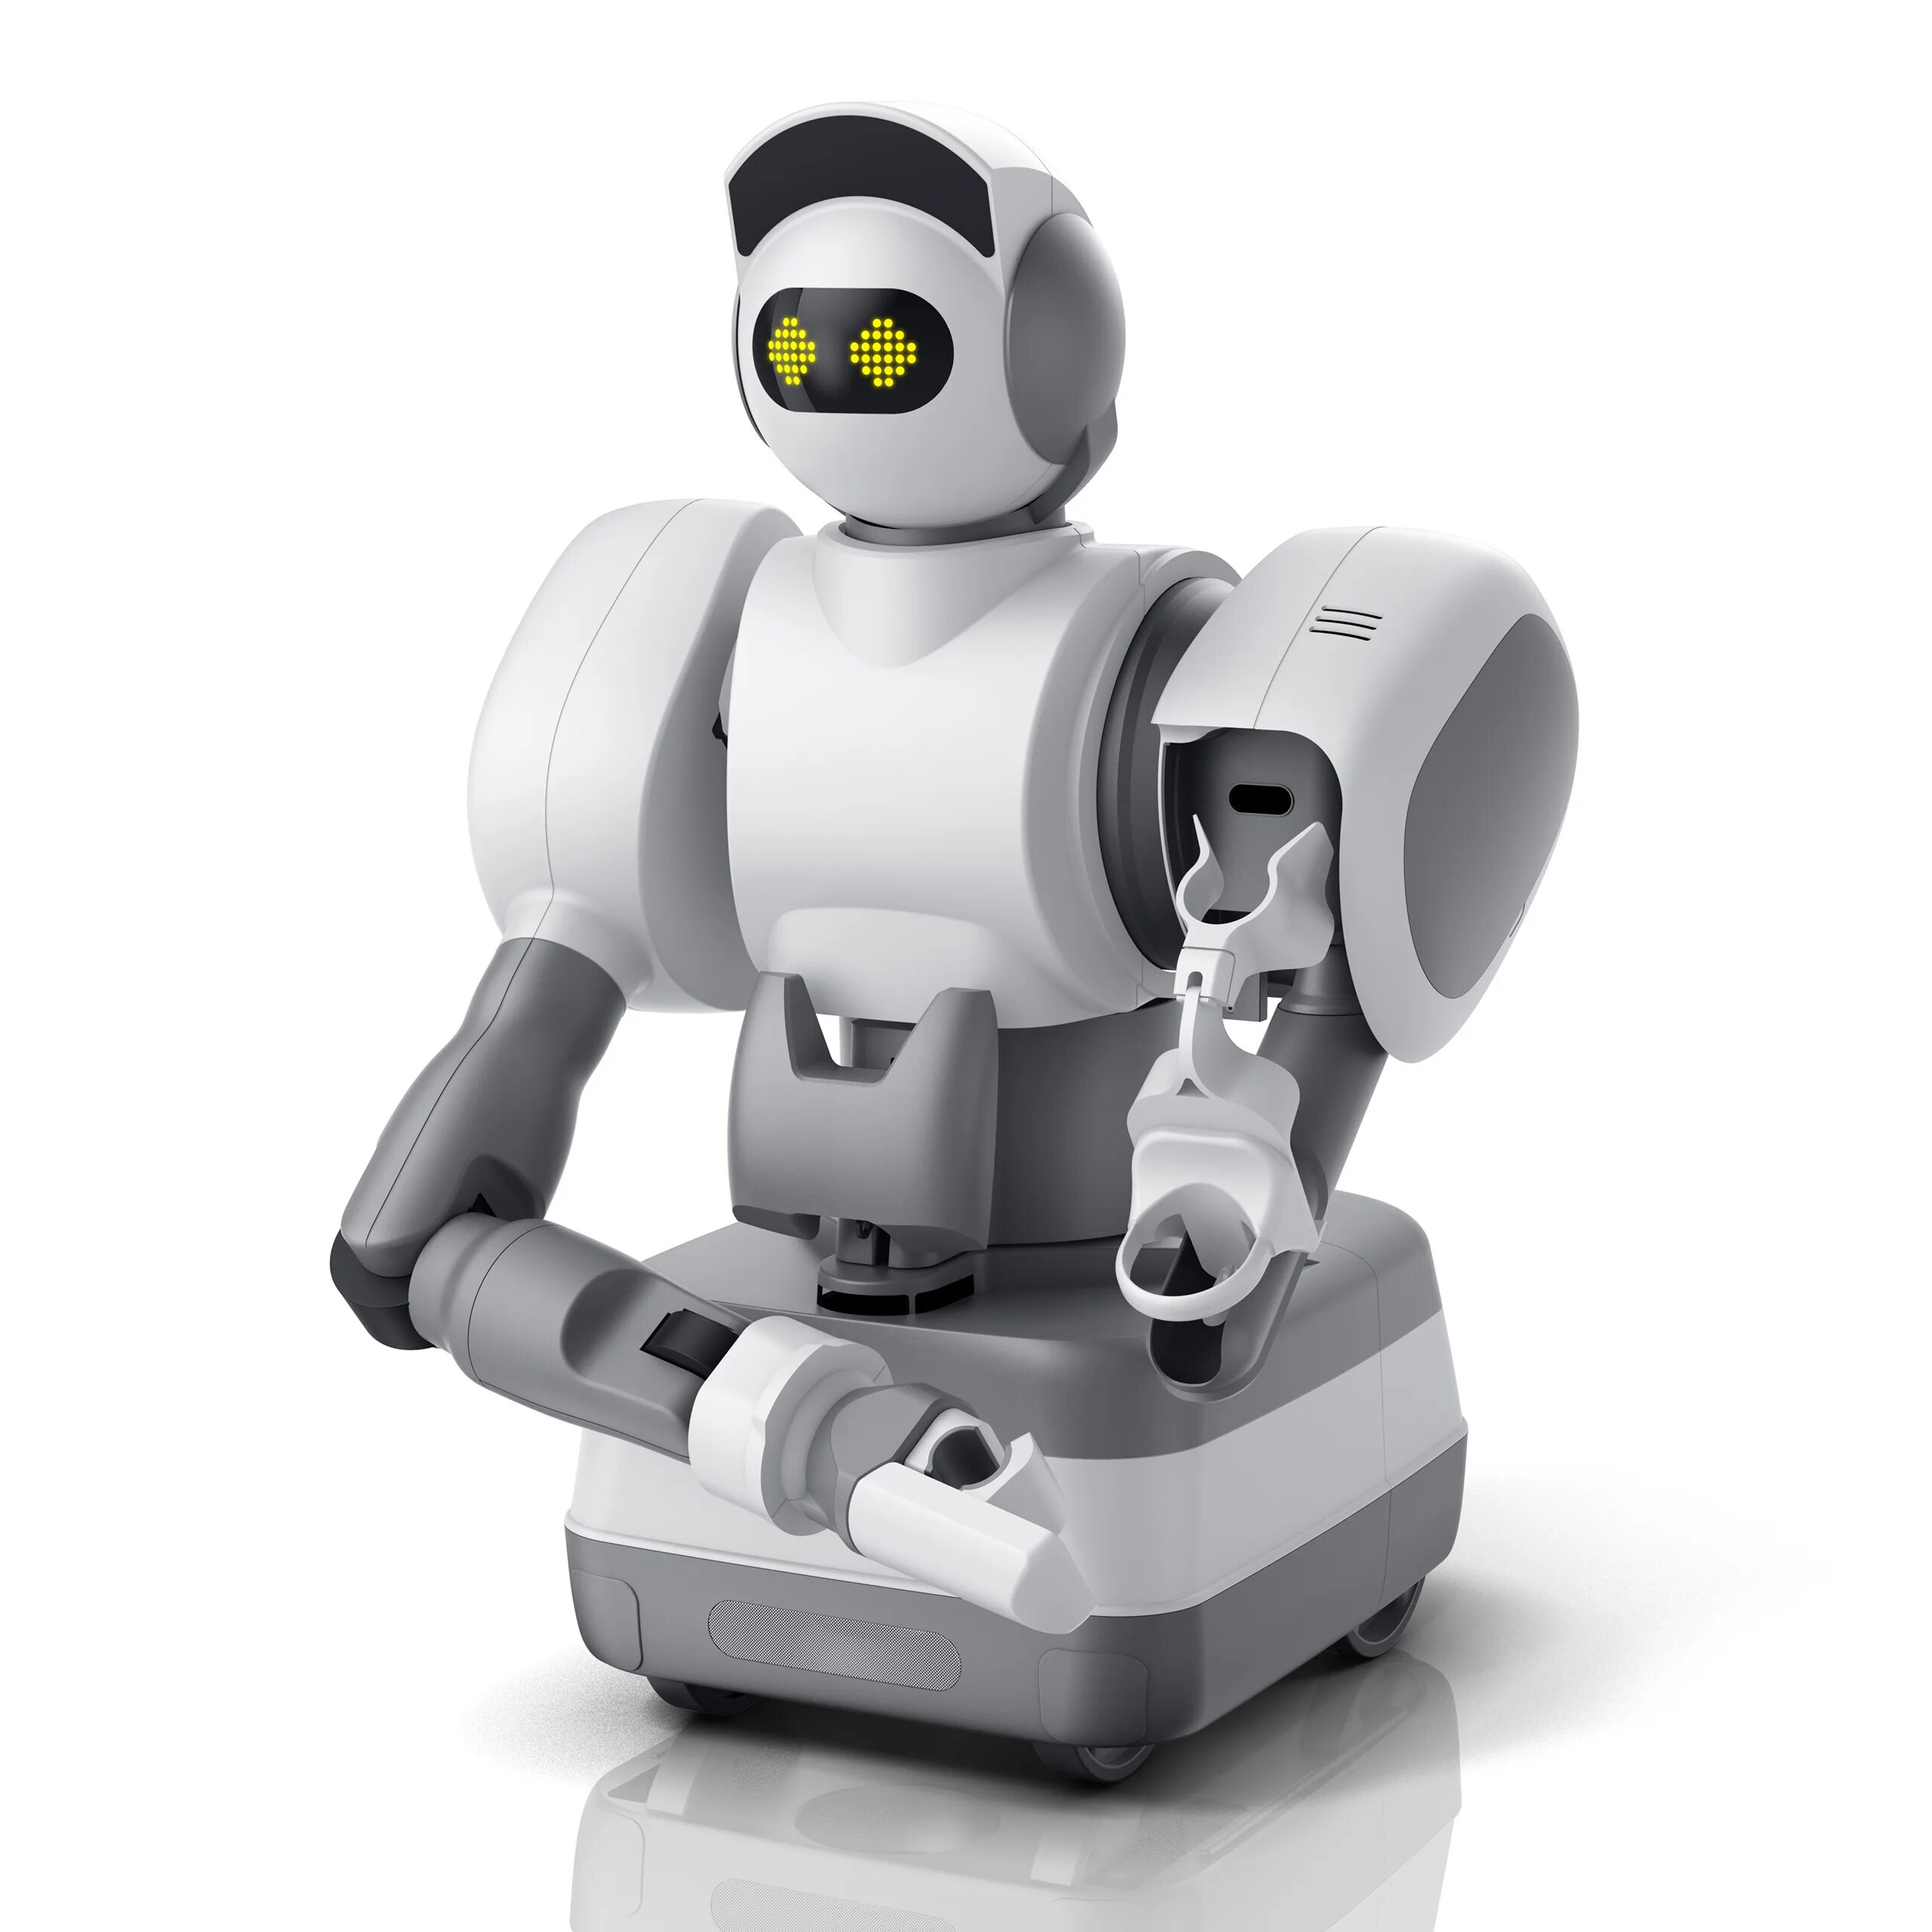 Robot robotic. Робот Aeolus. Робот Aeolus bot. Home Assistant Aeolus Robotics. Робот уборщик.